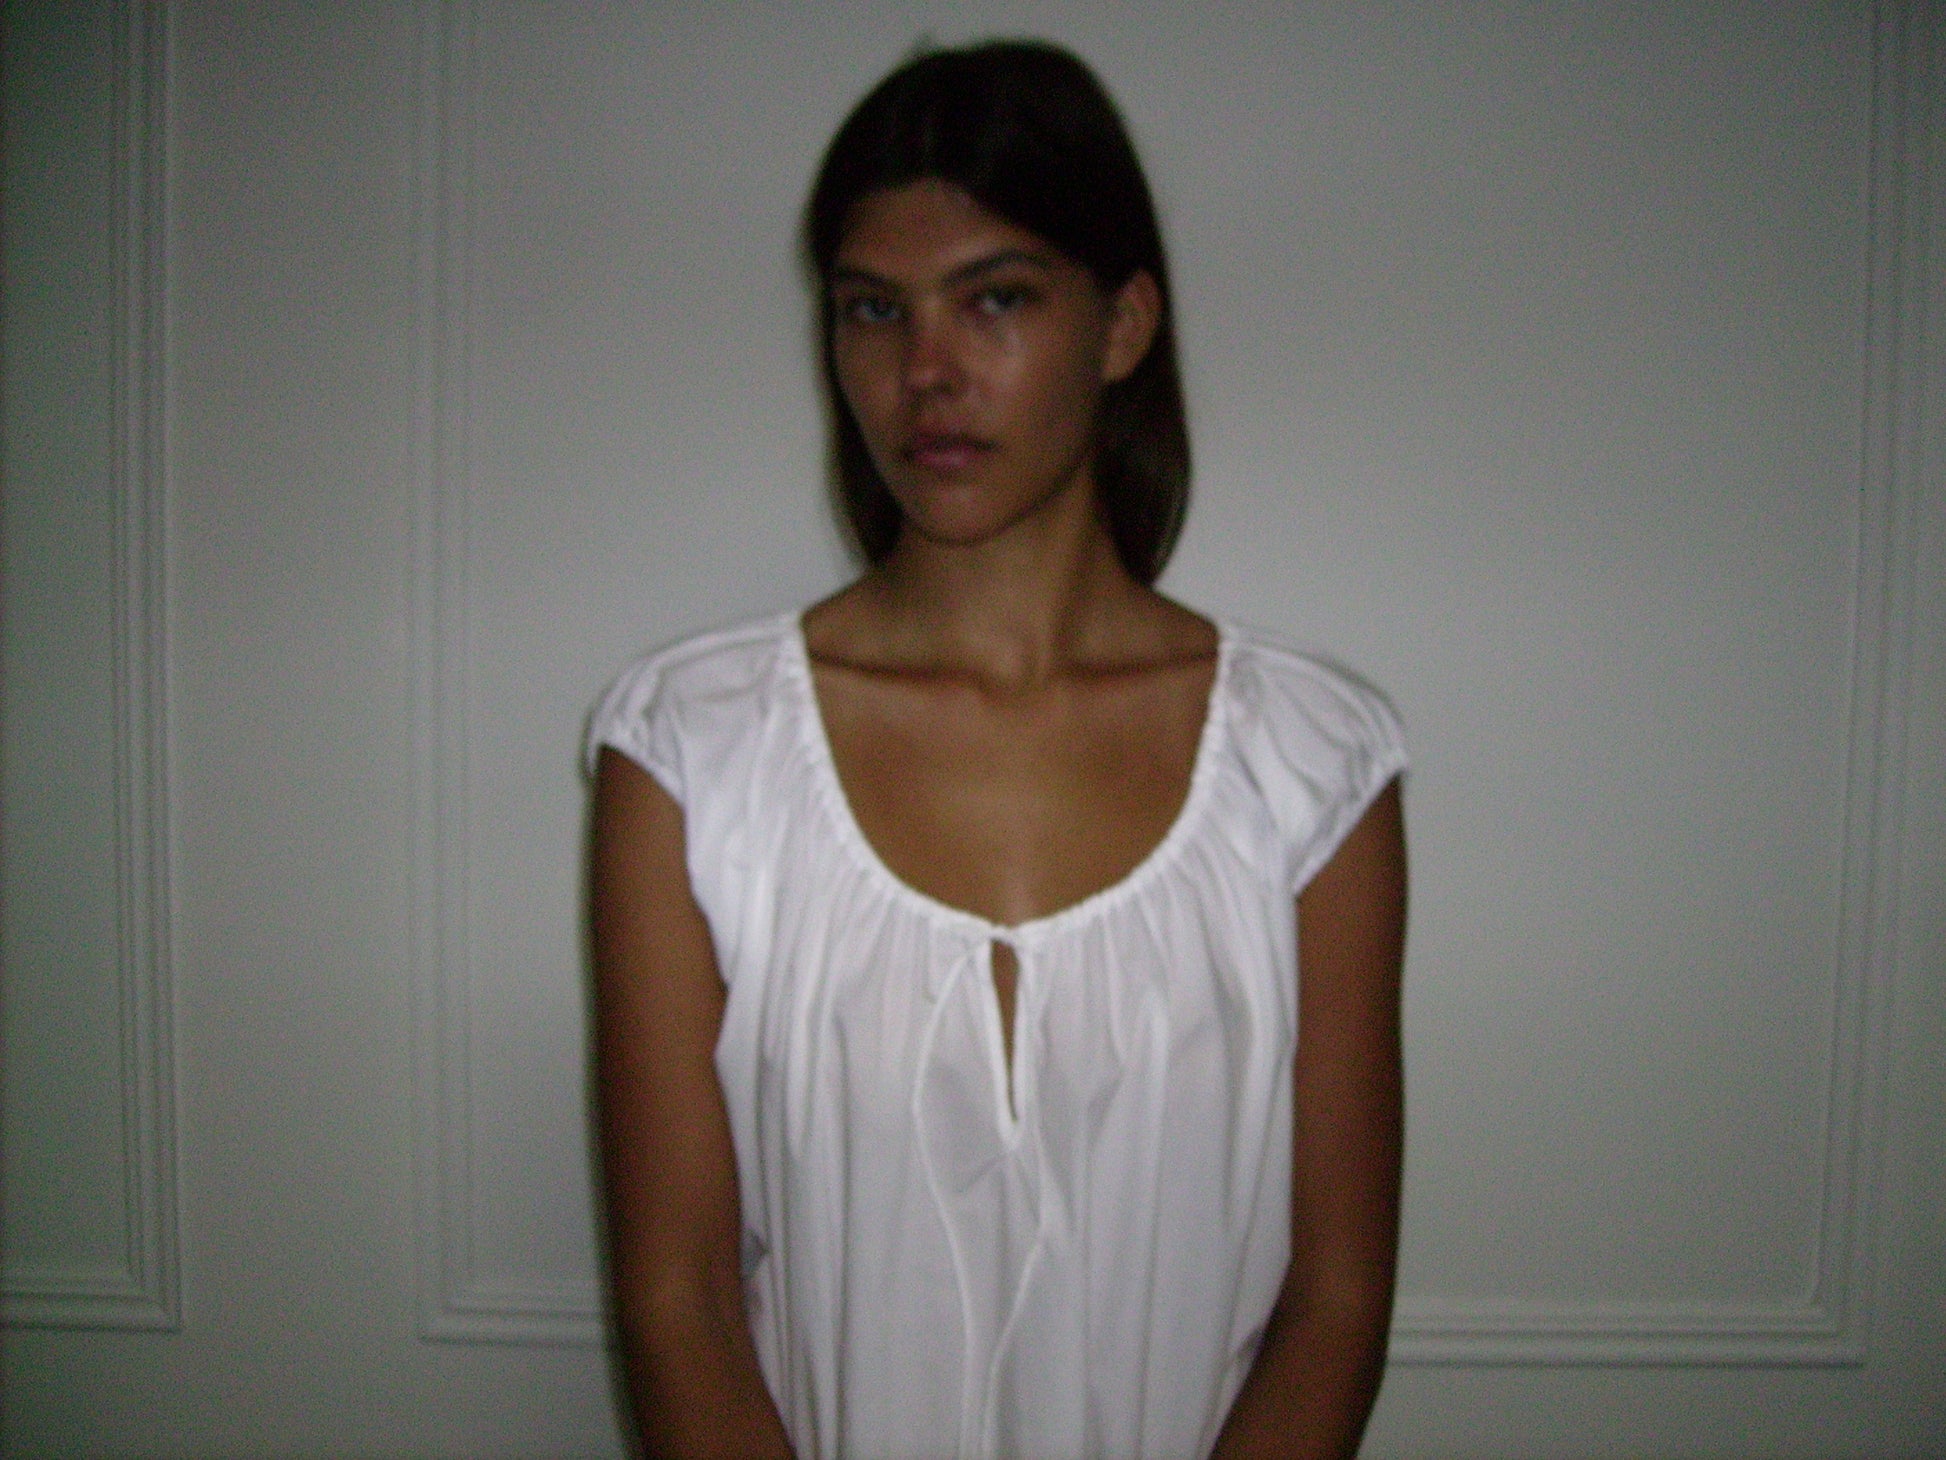 Female model wearing Capped Sleeve Dress - White by Deiji Studios against plain background